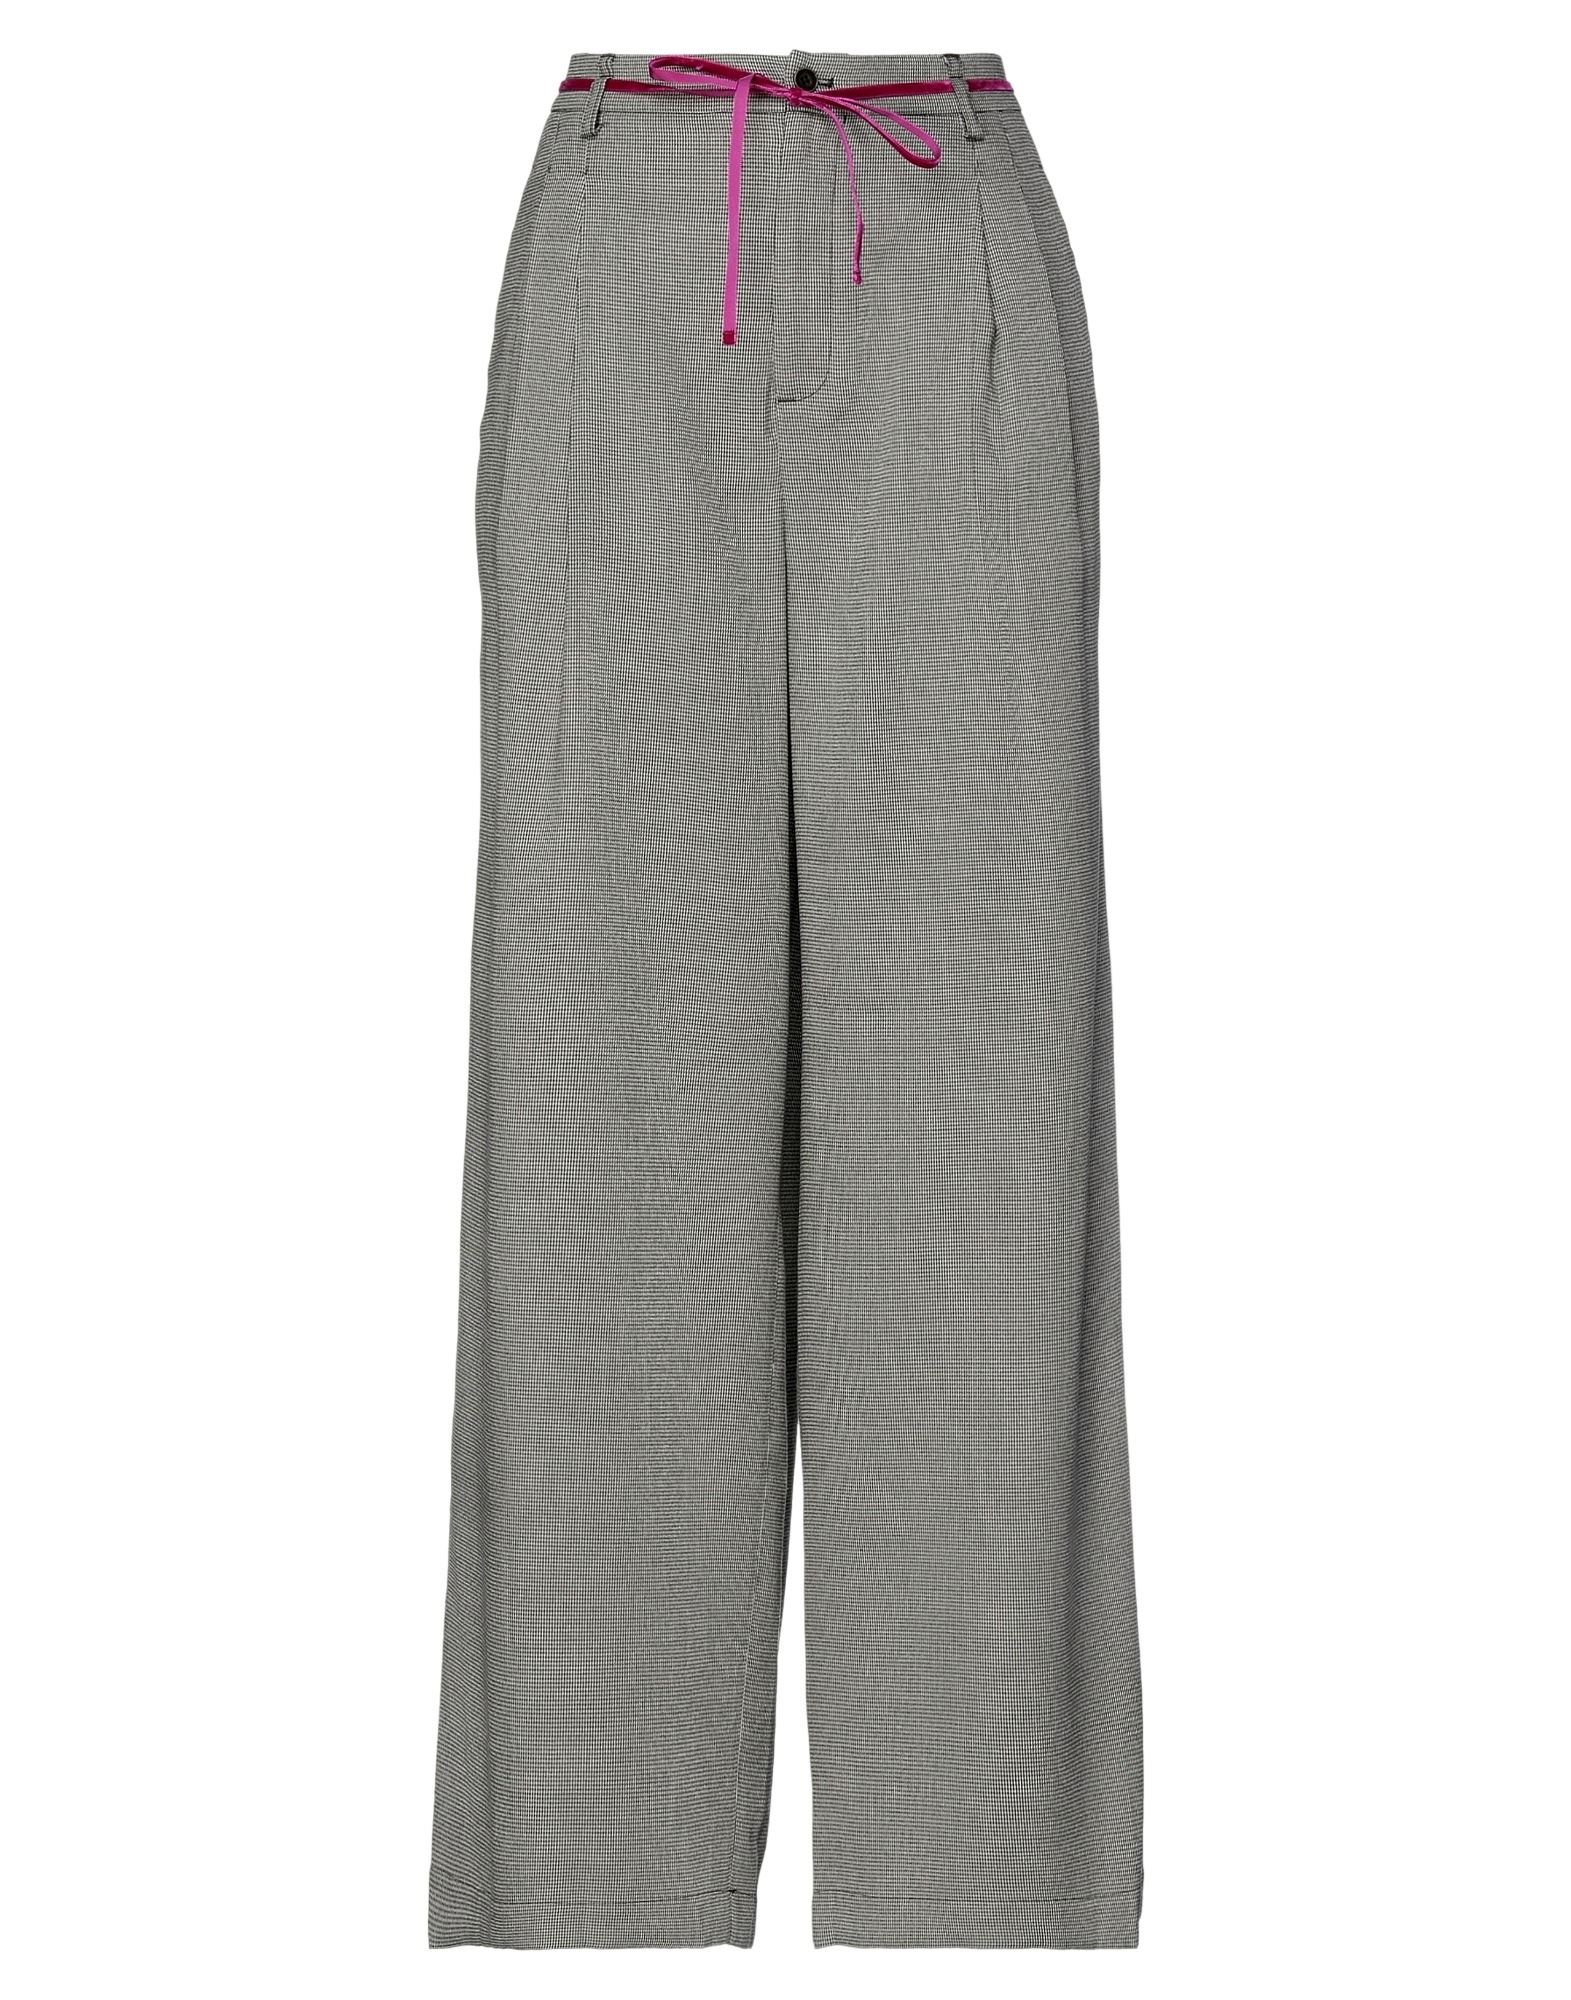 BELLEROSE Pants for Women | ModeSens